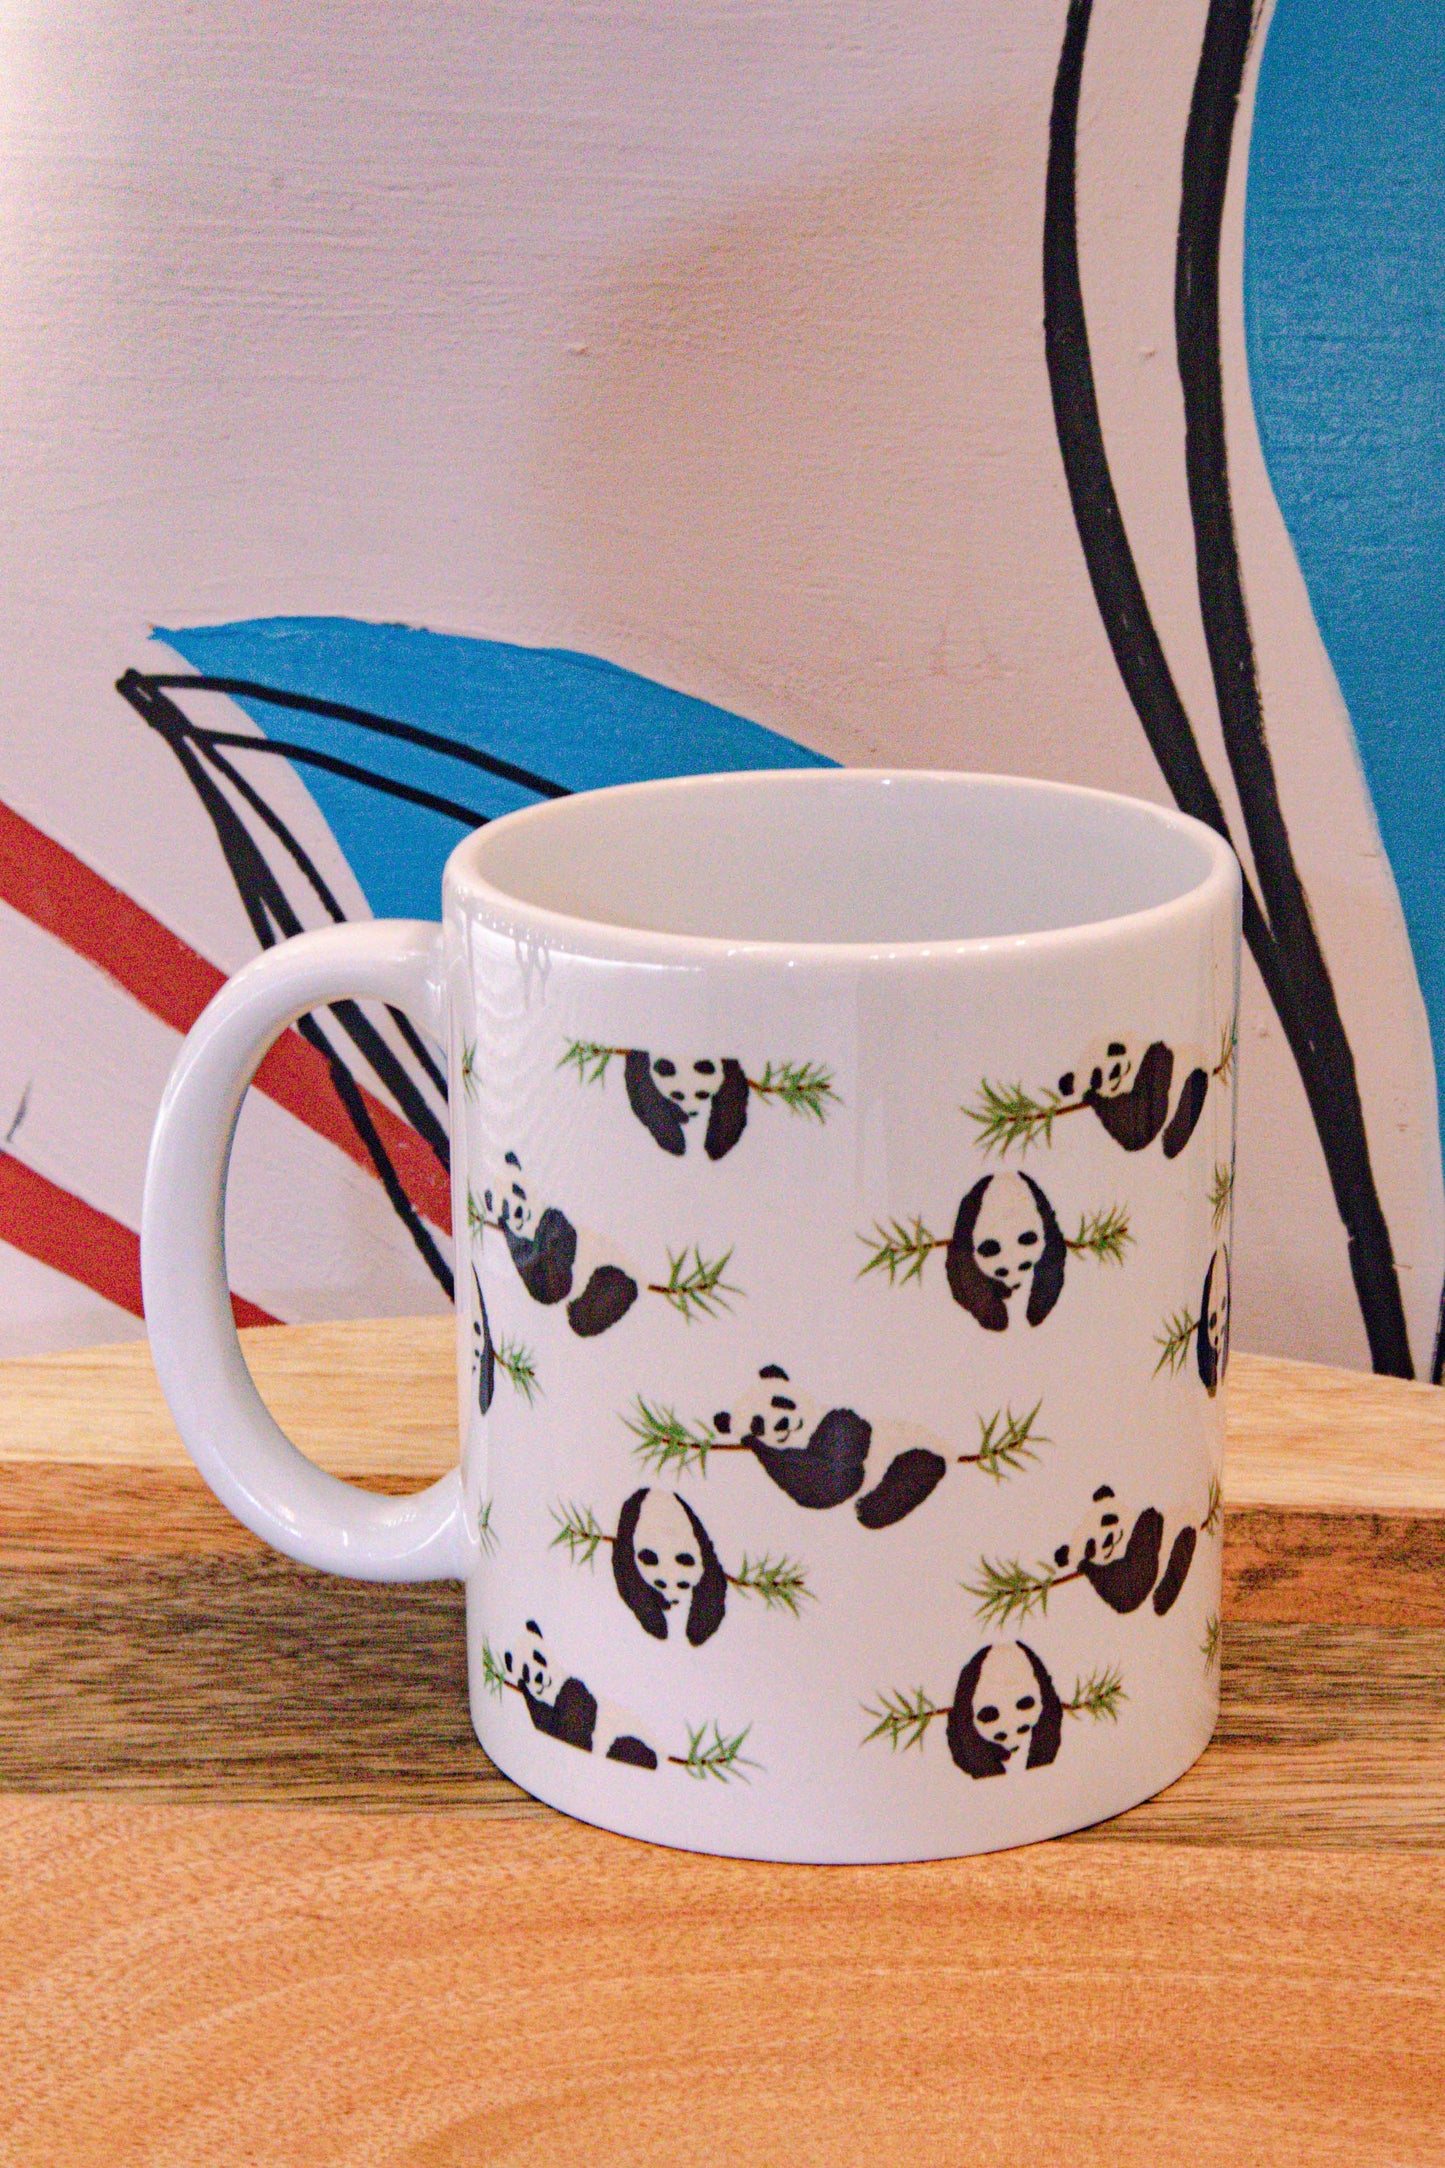 Ceramic mug with exclusive print - Panda!